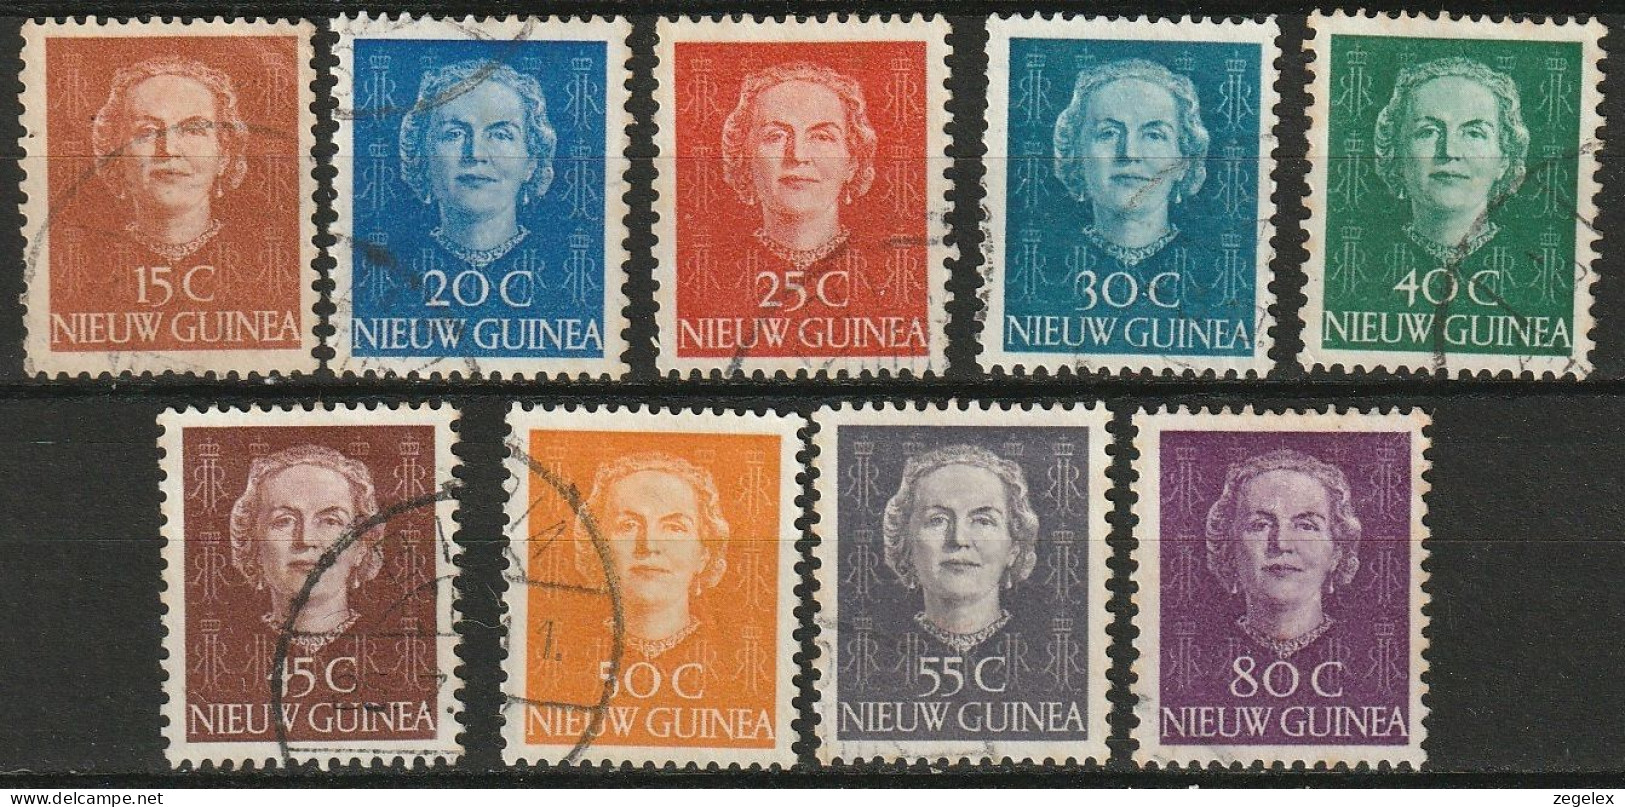 Nederlands Nieuw Guinea 1950, Koningin Juliana NVPH 10-18 Gestempeld/used - Netherlands New Guinea